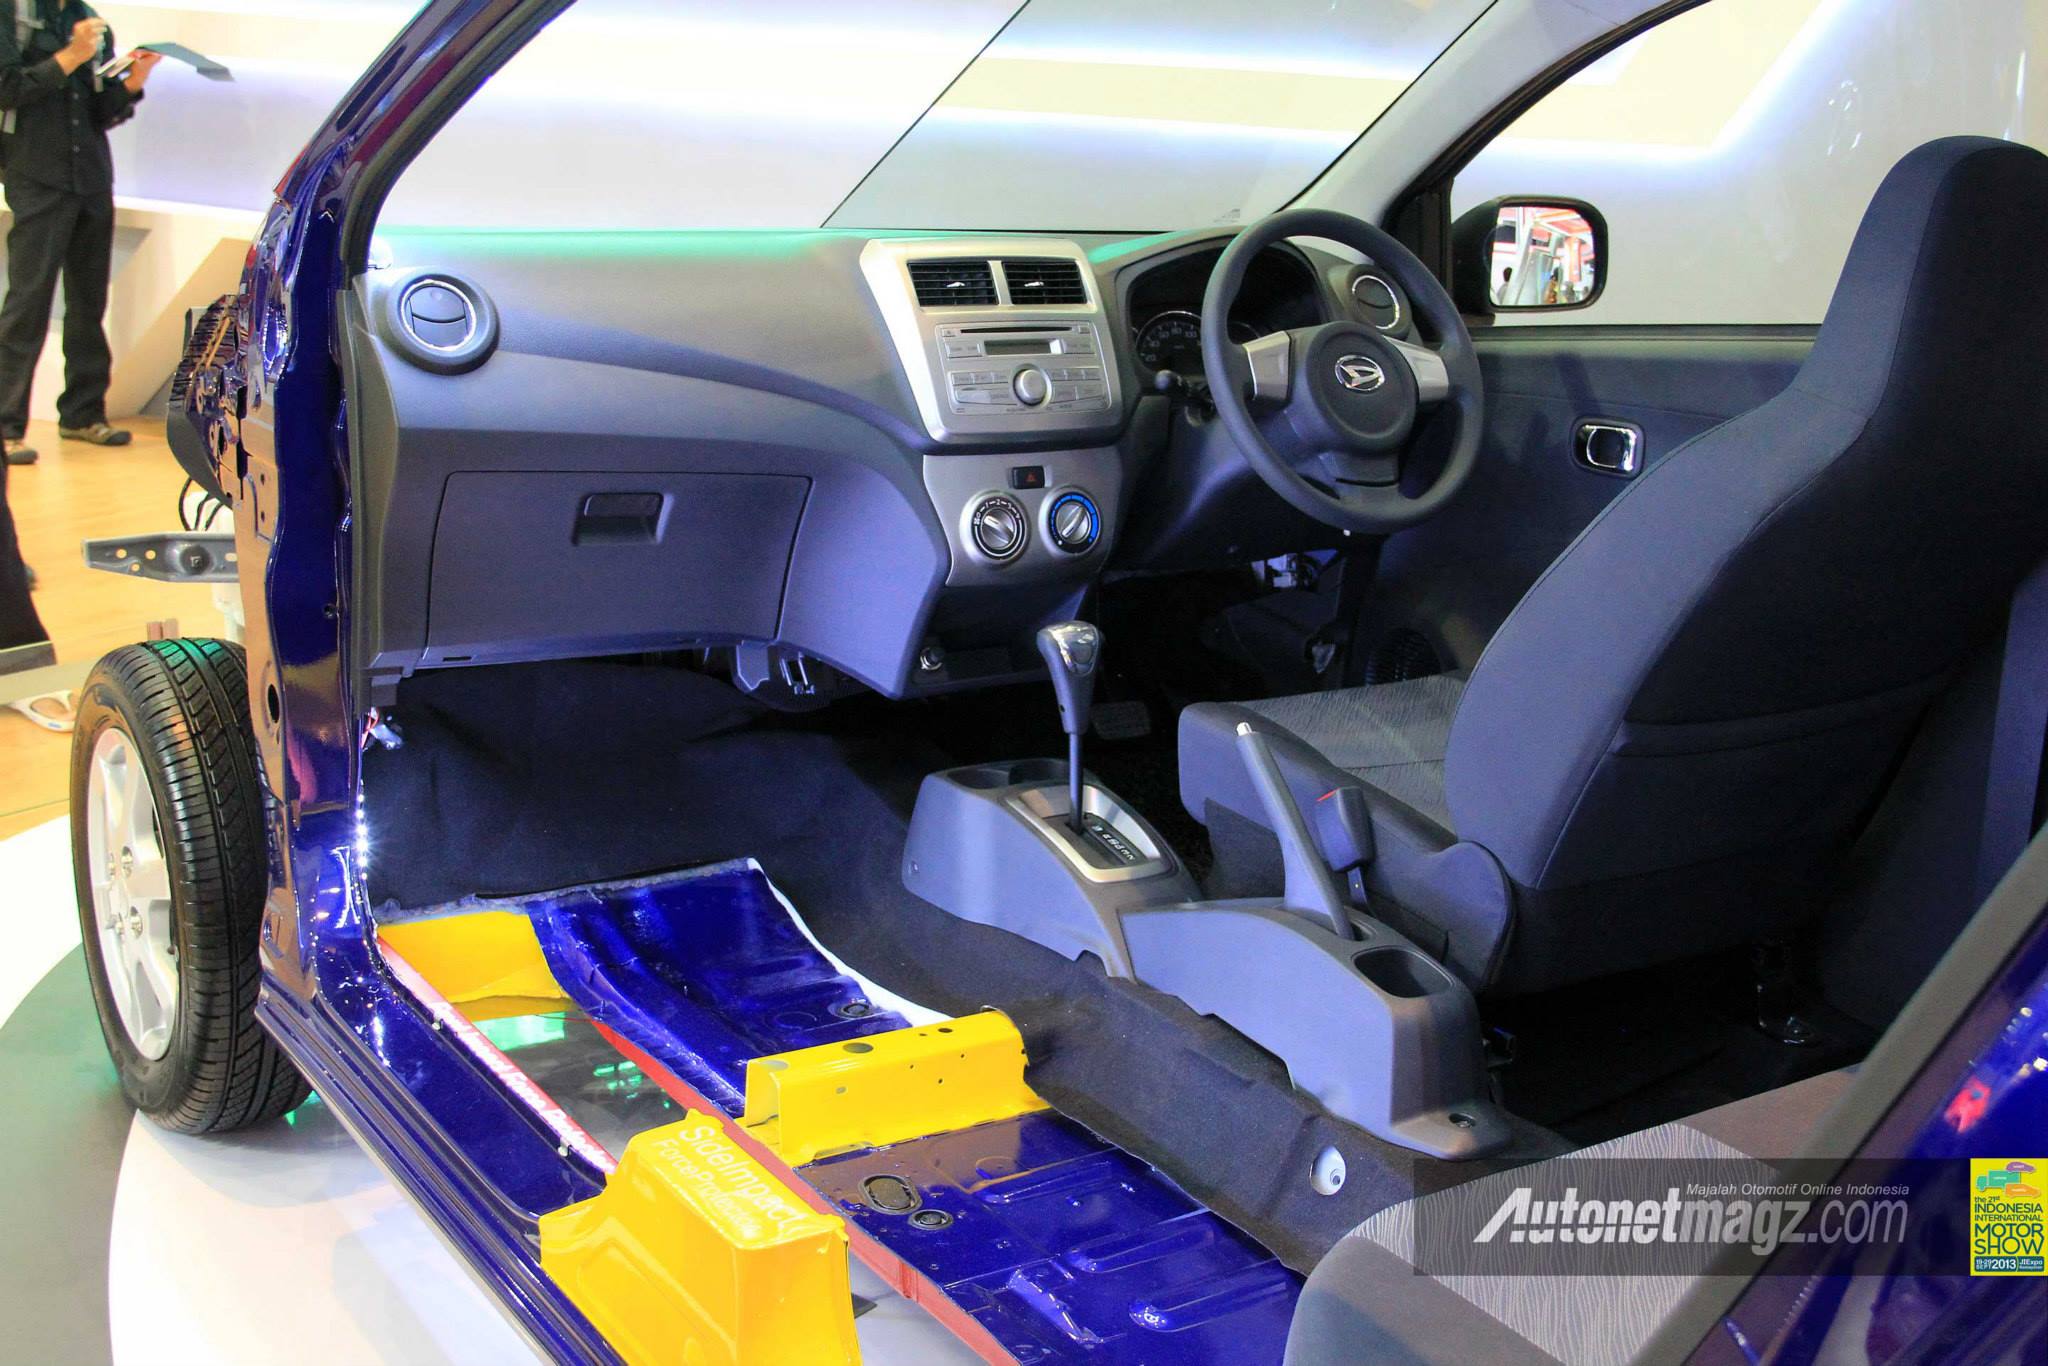  Interior  dan dashboard Daihatsu  Ayla  AutonetMagz 